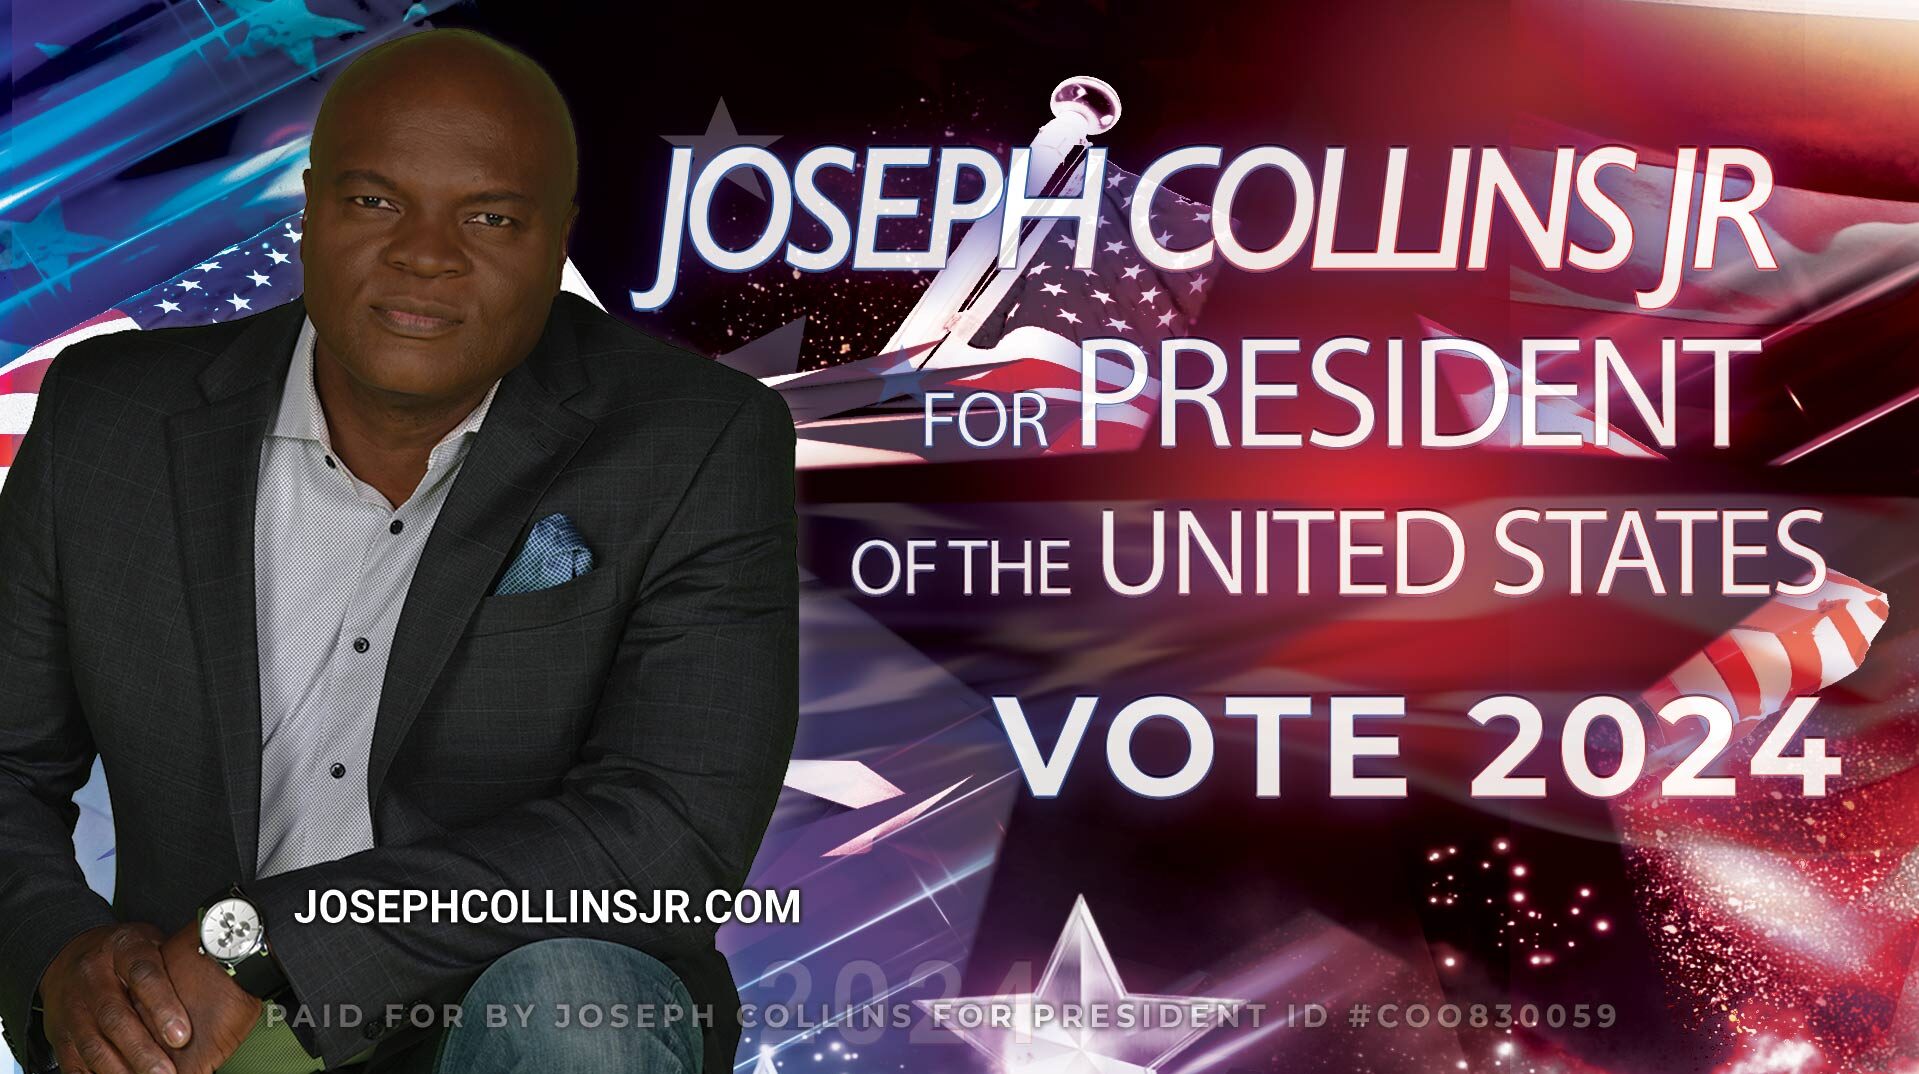 Joseph Collins Jr for President 2024